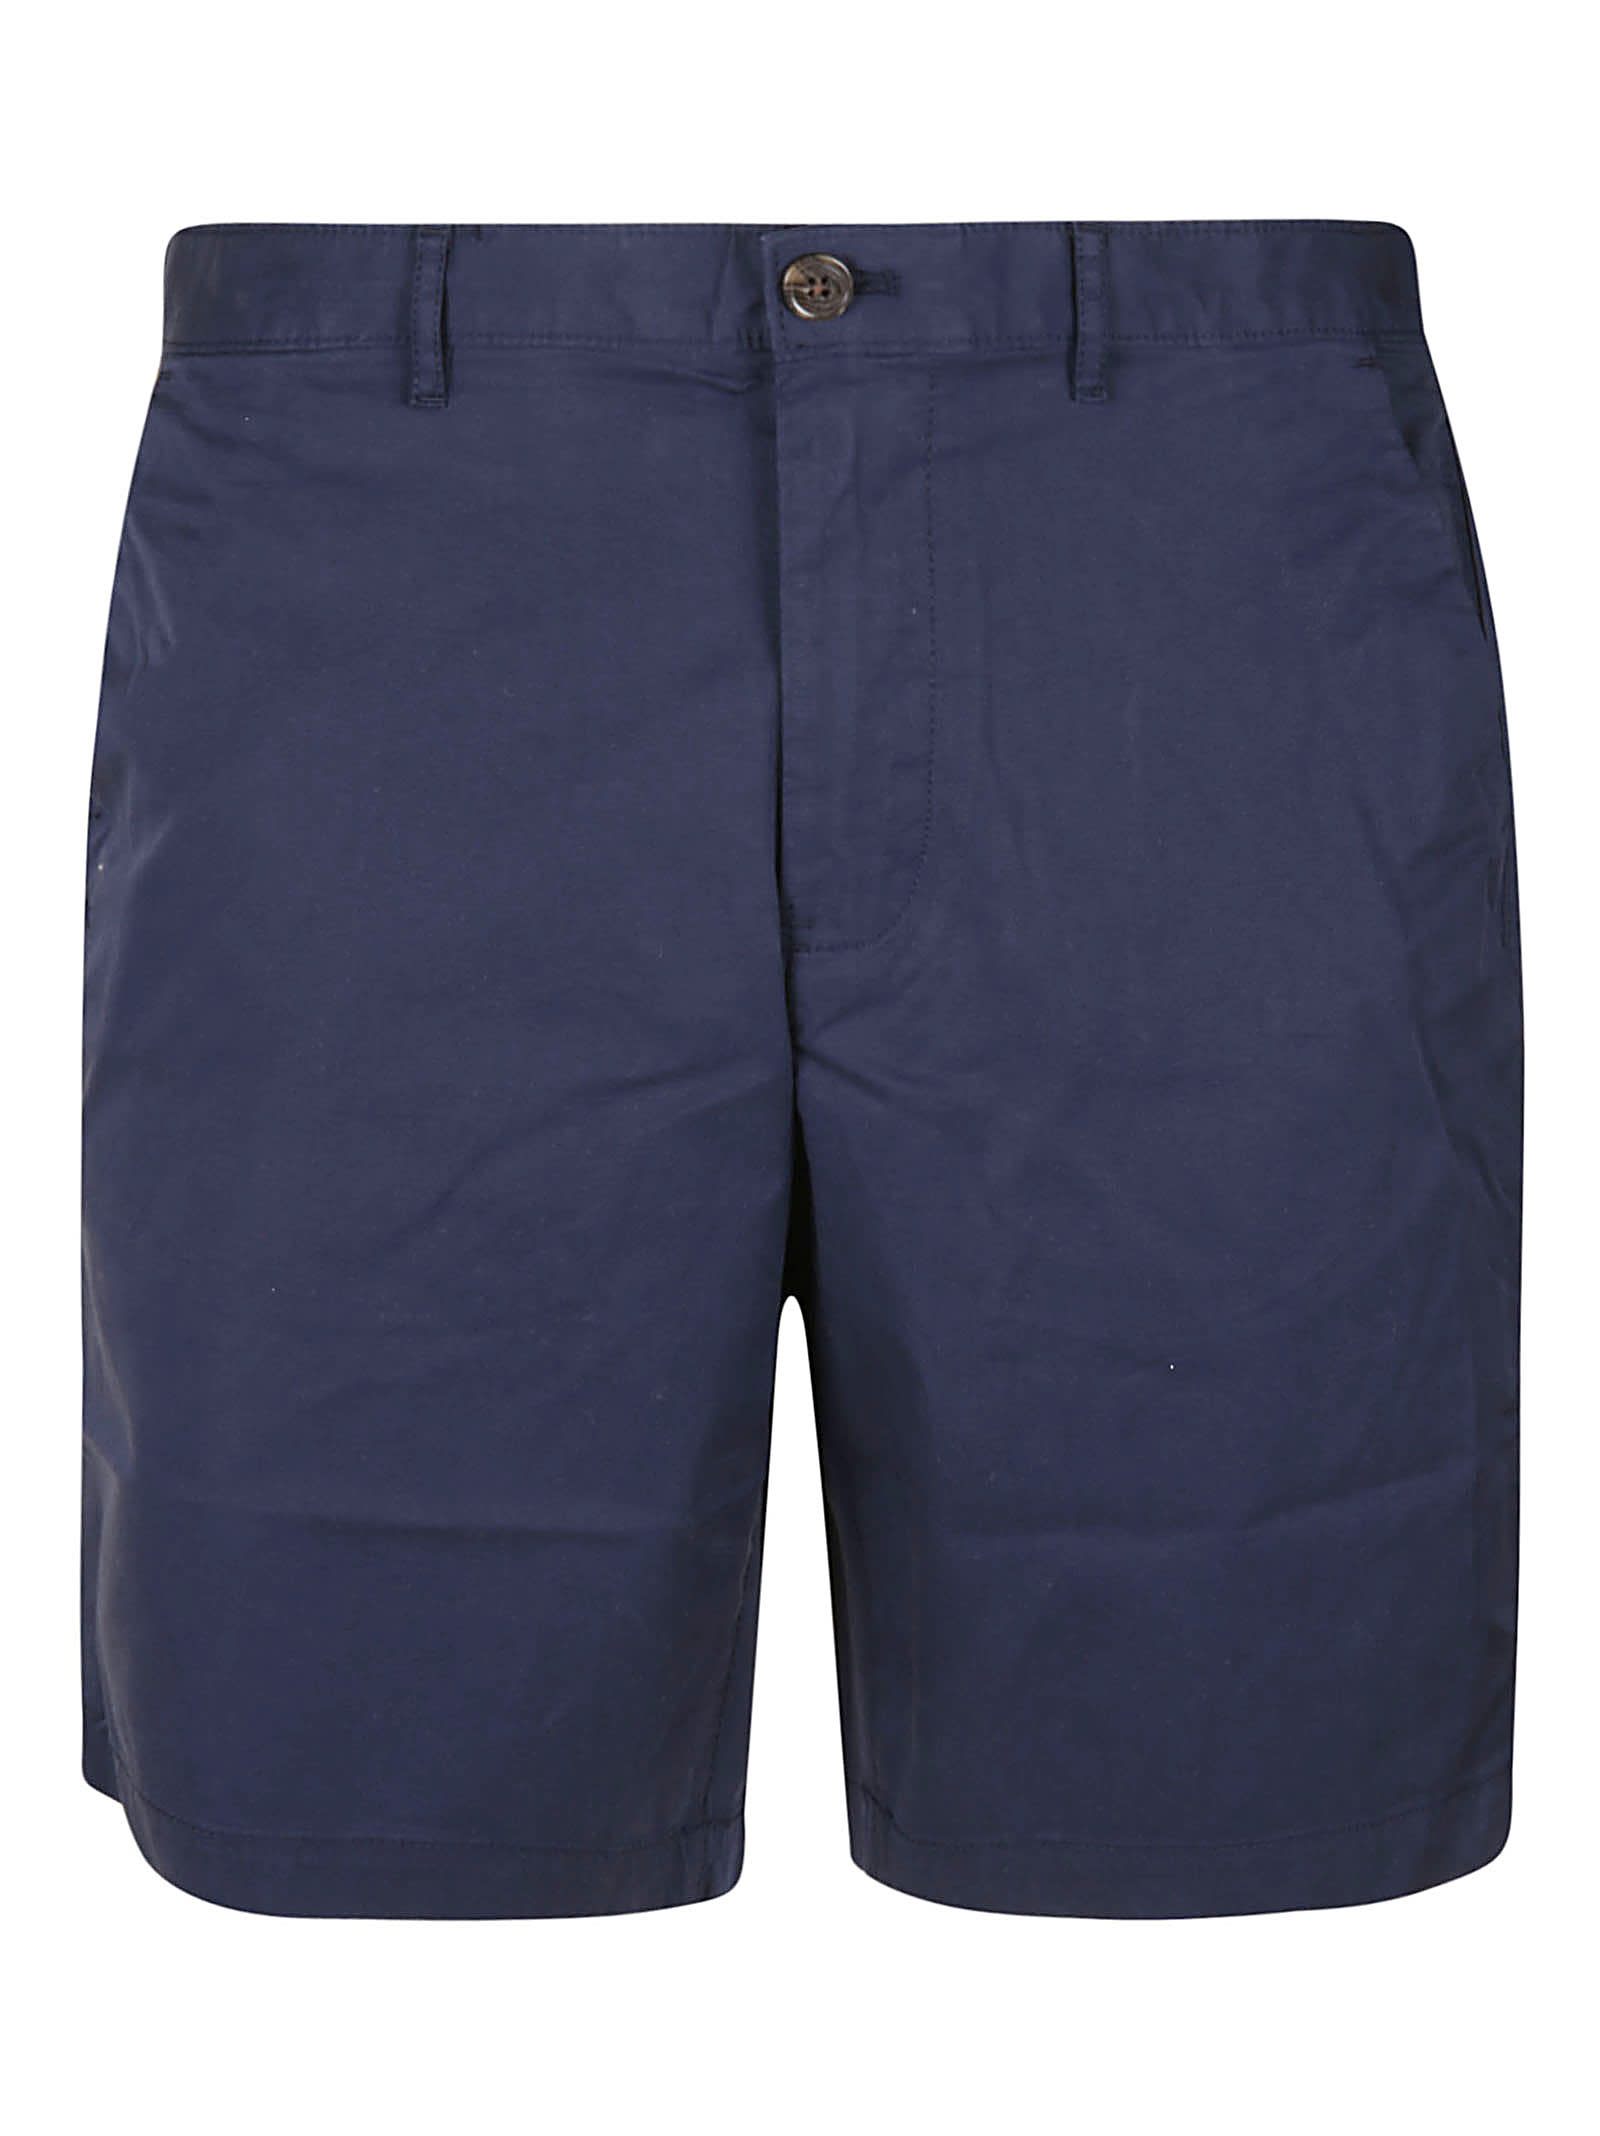 Michael Kors Classic Plain Trouser Shorts